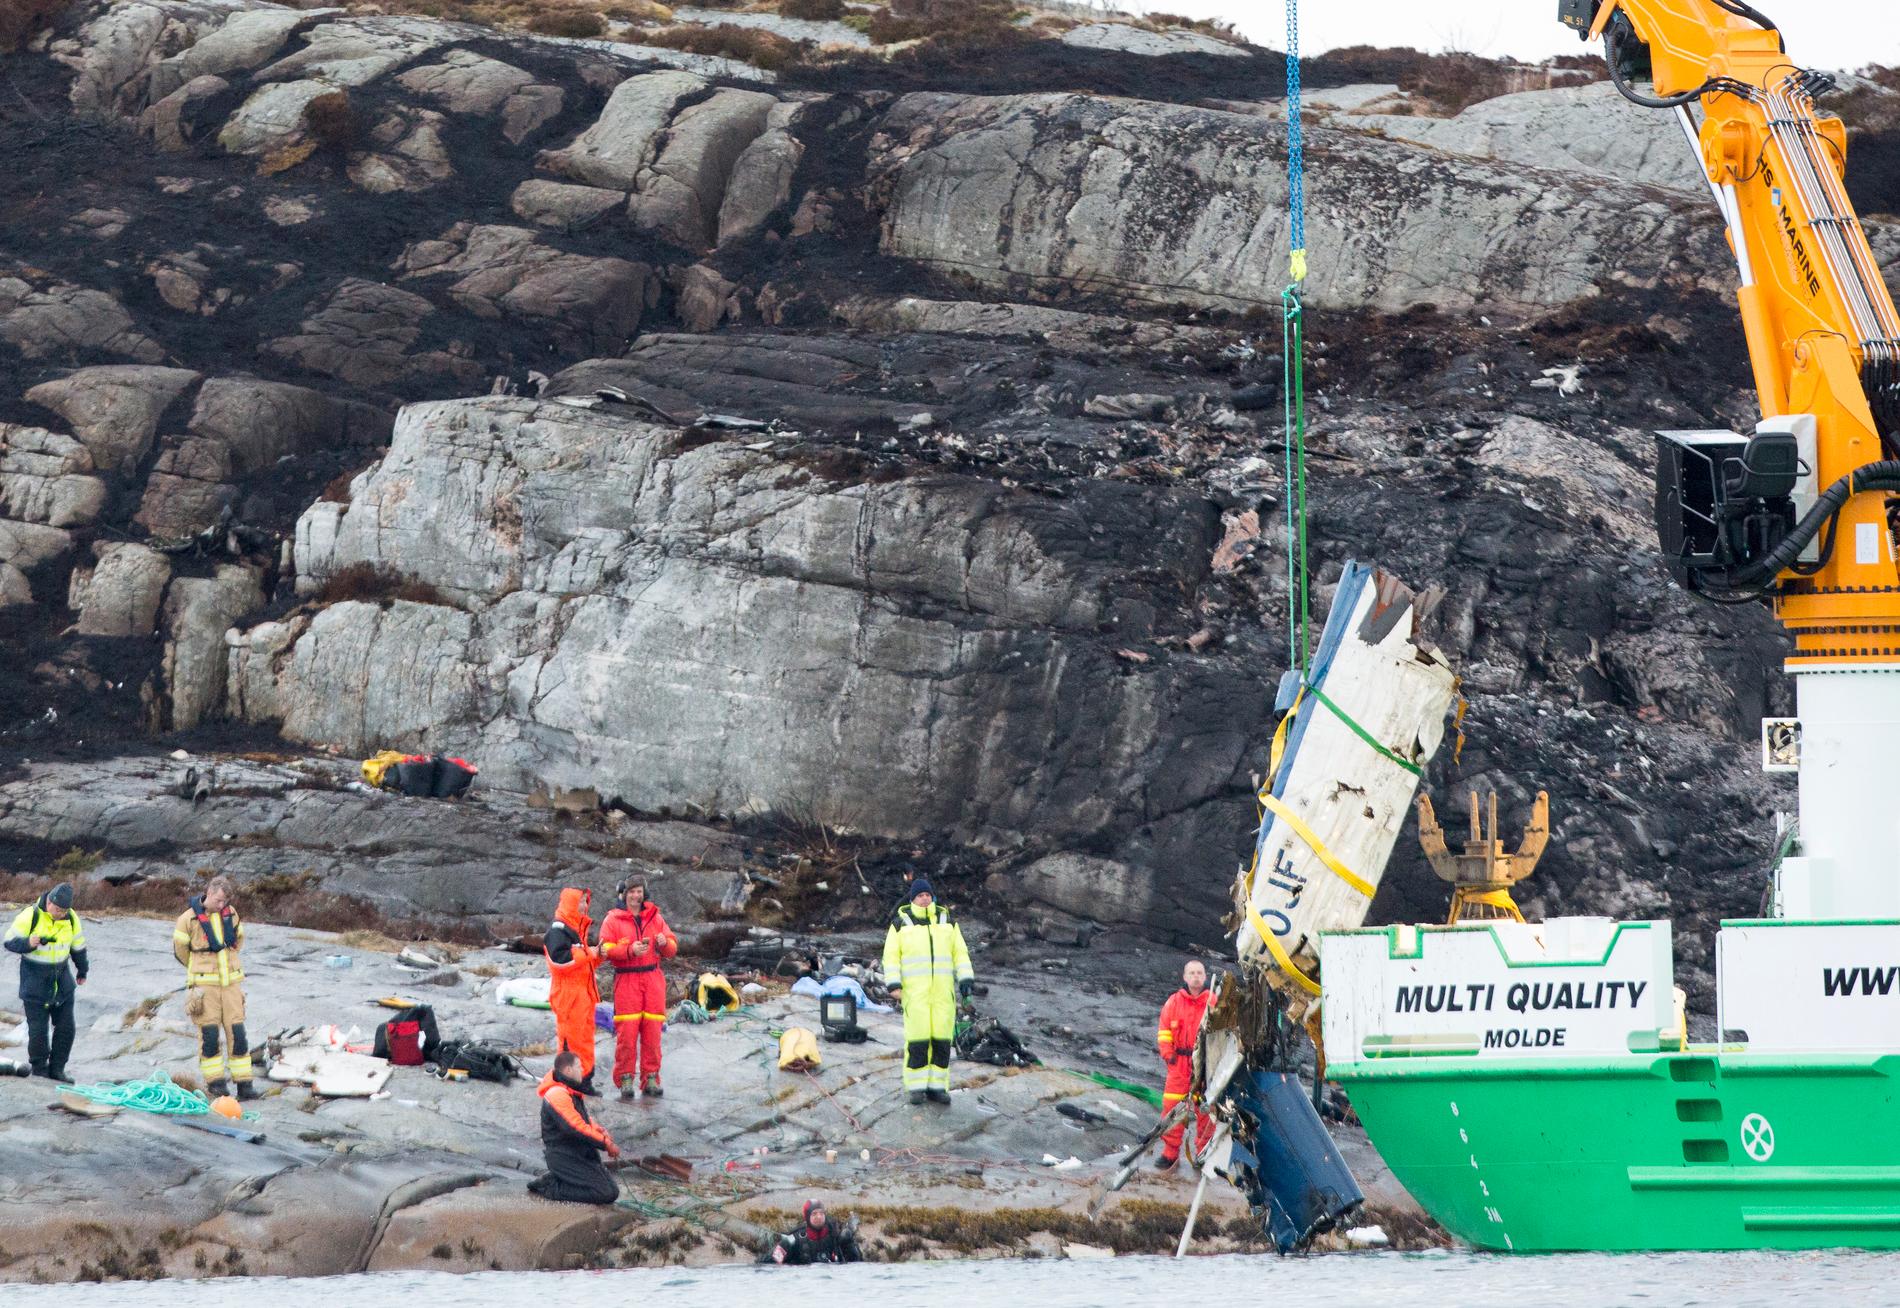 Stjärtpartiet från den kraschade Eurocopter EC-225 Super Puma helikoptern bärgades på fredagskvällen. Samtliga ombord omkom i en helikopterolycka i närheten av Bergen i Norge, enligt räddningsmyndigheter. Helikoptern var på väg från en oljeplattform i Nordsjön med 13 människor ombord när den störtade från hög höjd.